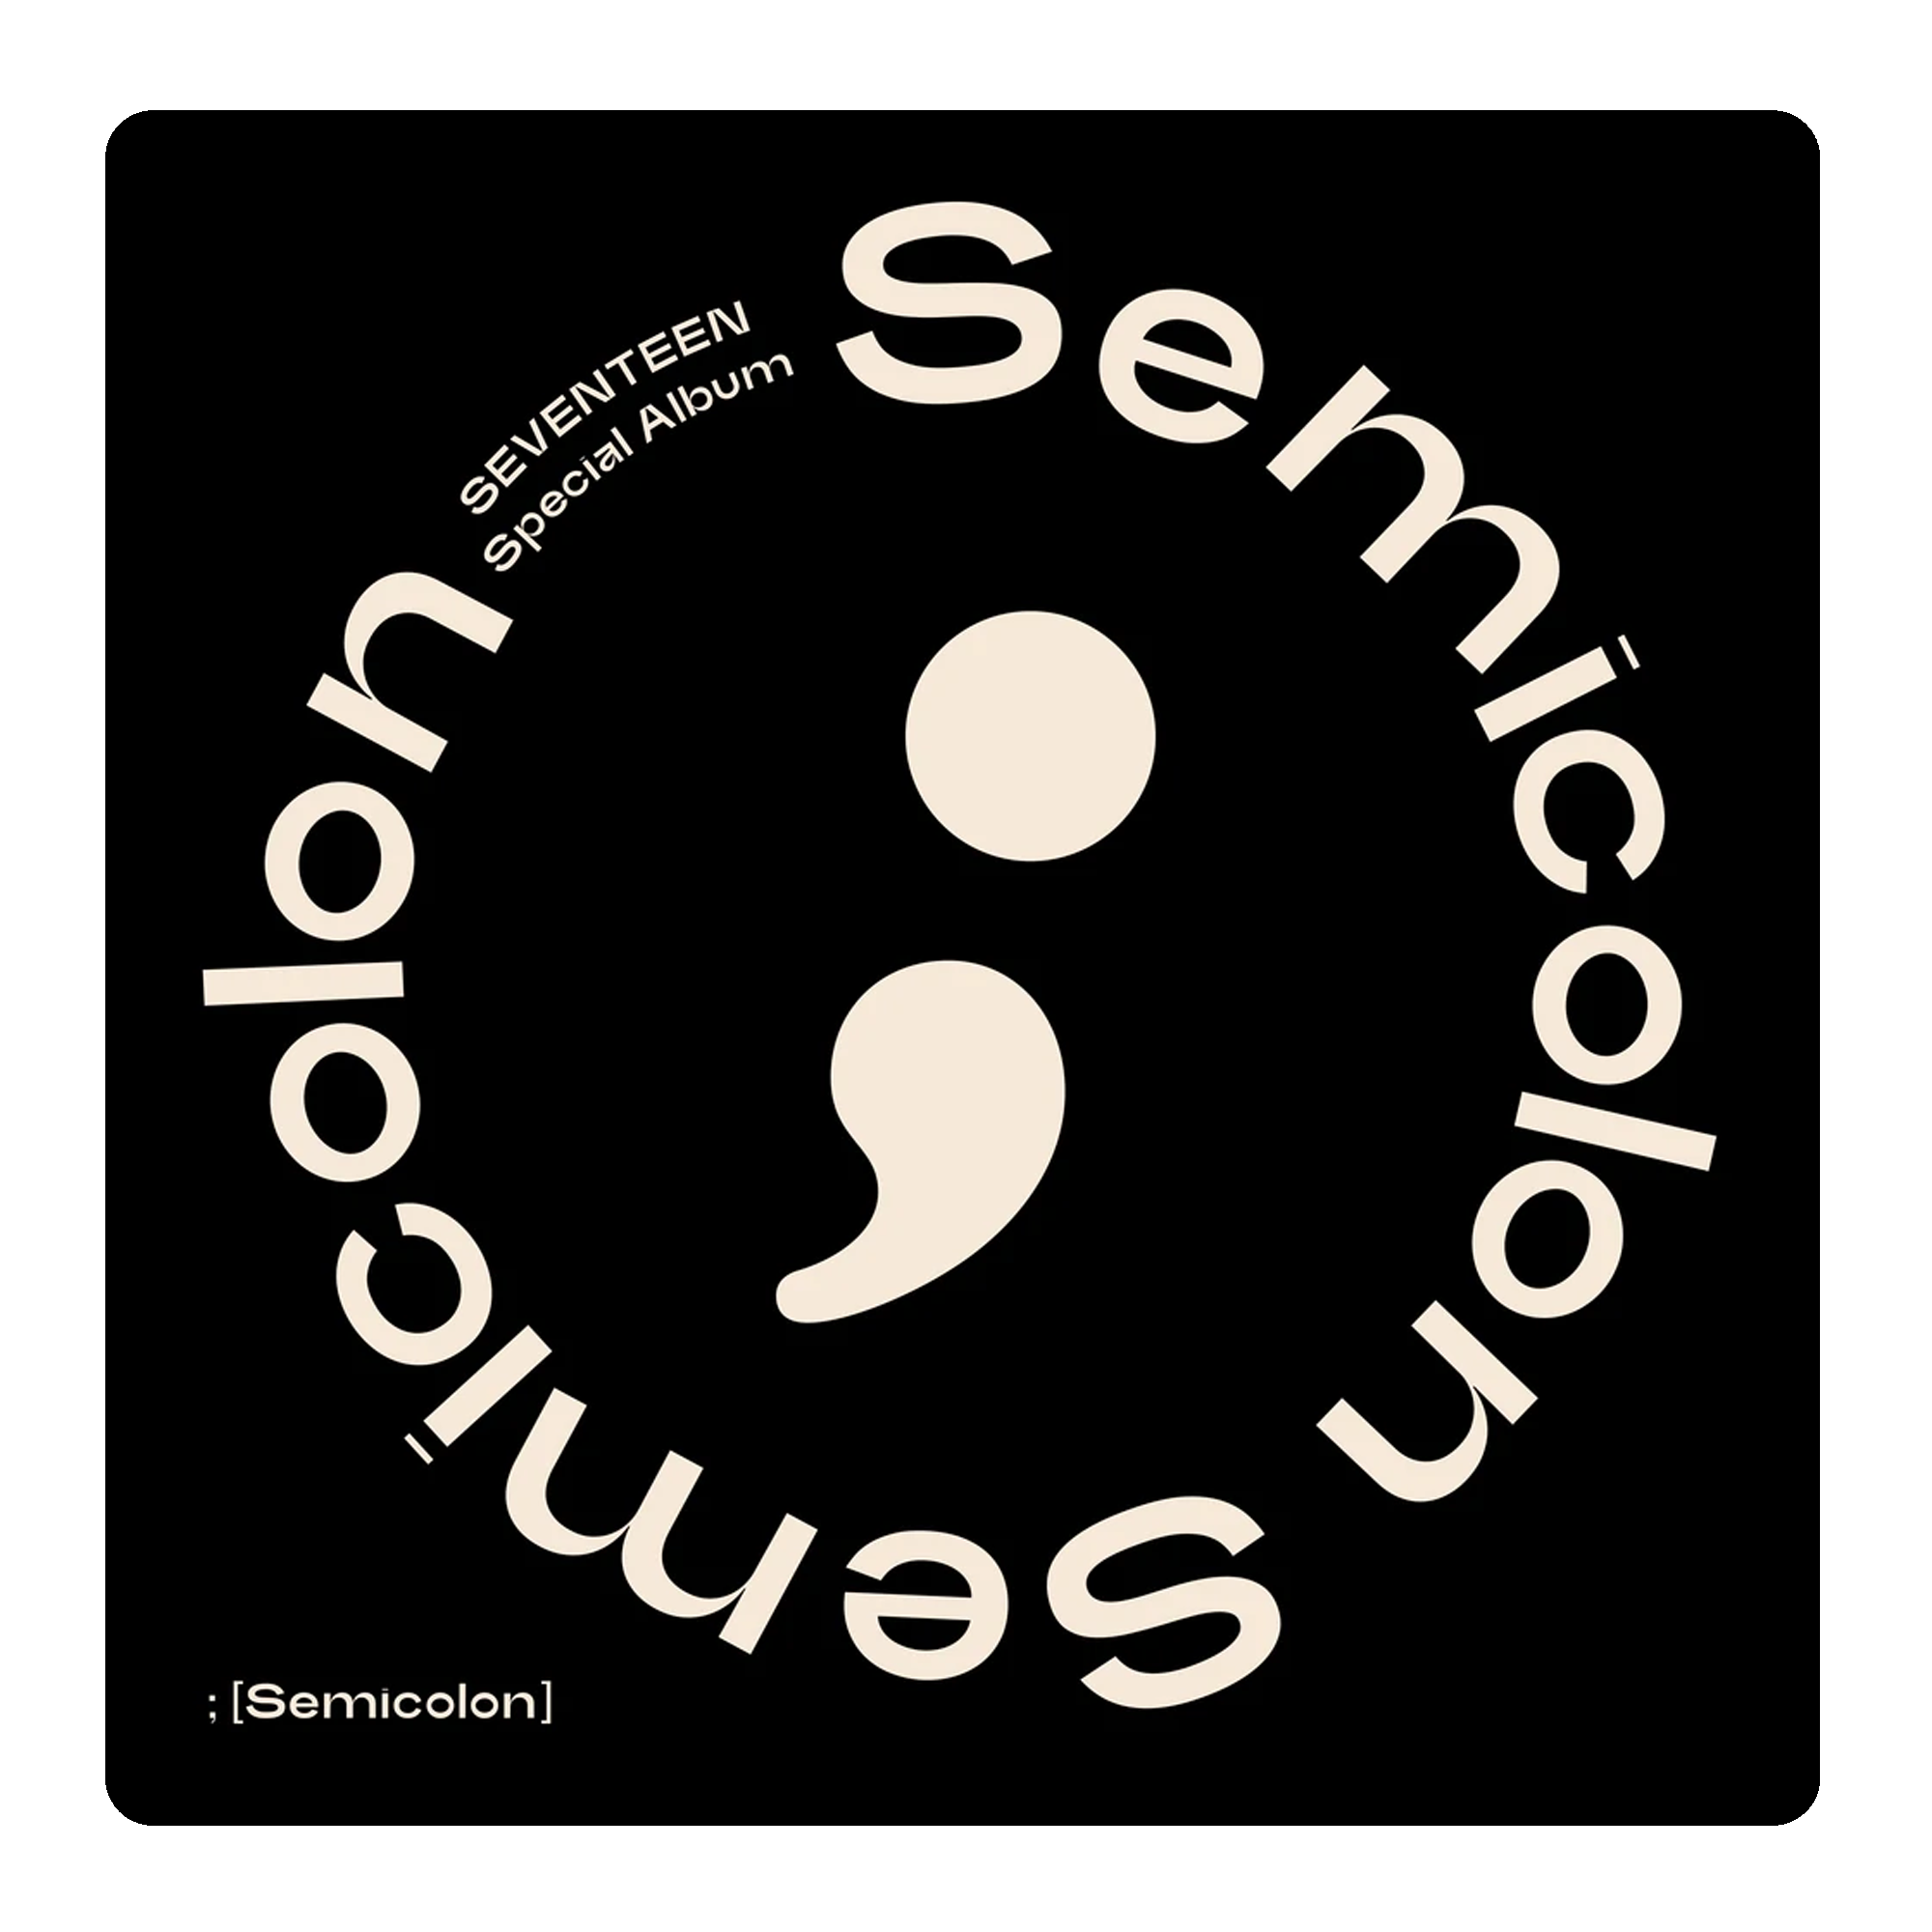 Seventeen - Semicolon Special Album